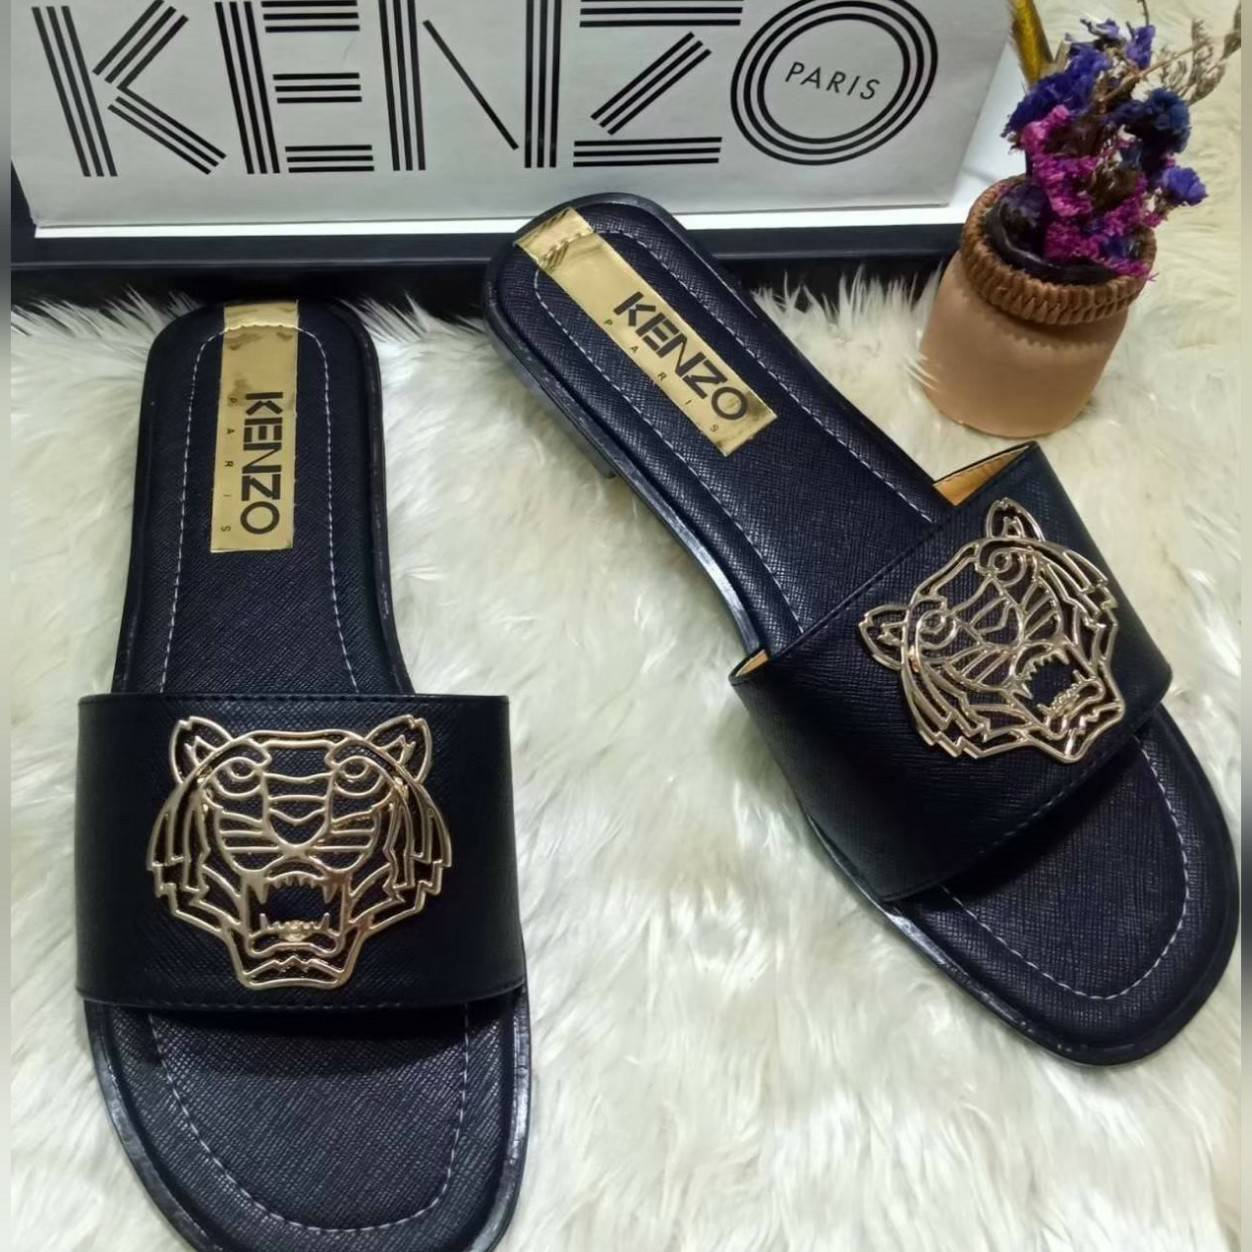 รองเท้า ไซส์ 36- 44 ส้นเตี้ย ลายเสือ KenZO ออกแบบน่ารัก สีสวย มีสไตล์ คะ